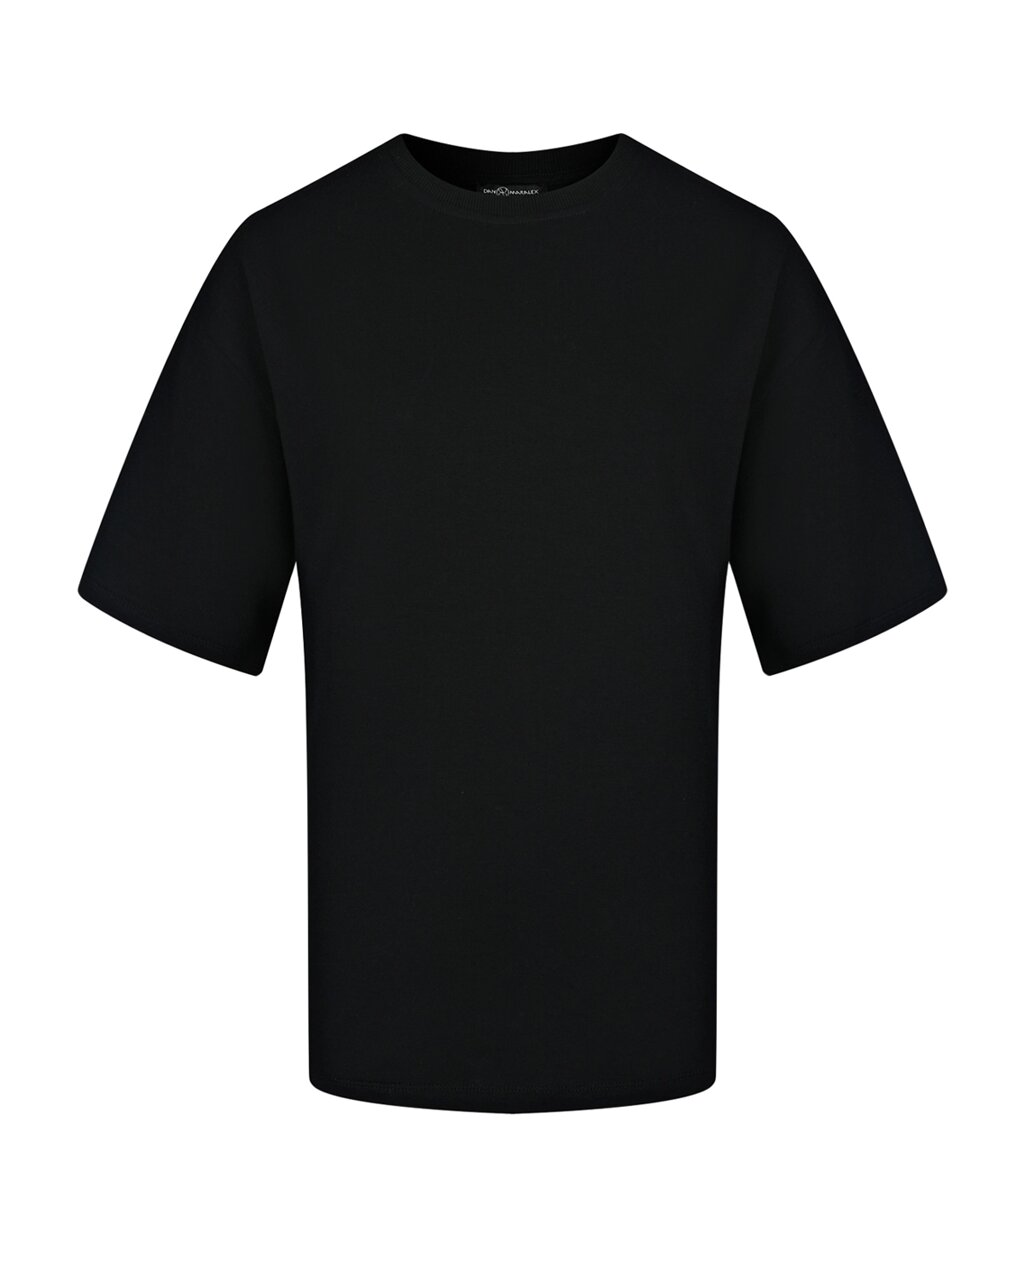 Черная футболка oversize Dan Maralex от компании Admi - фото 1